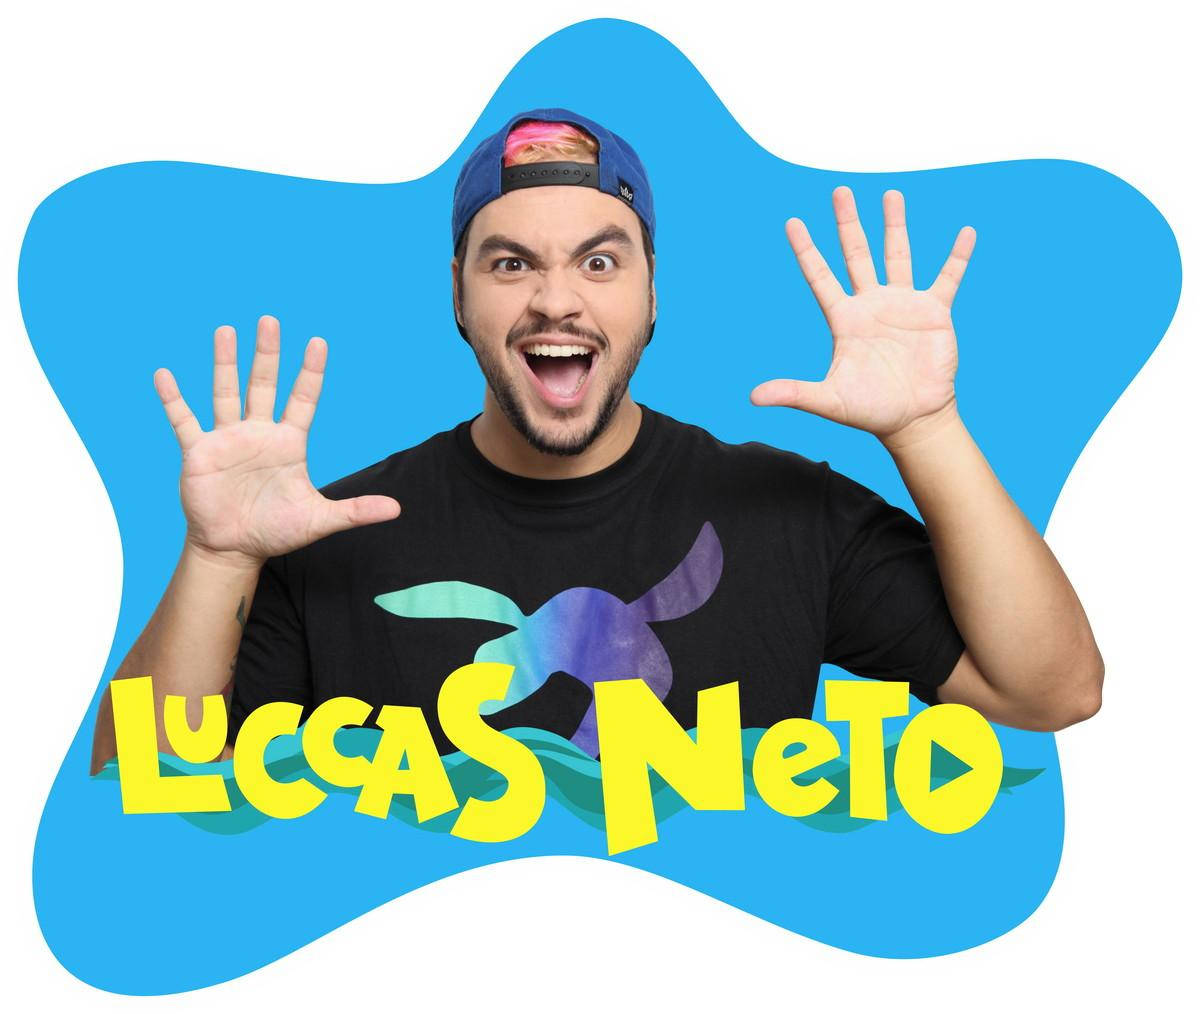 Lucas neto HD wallpapers